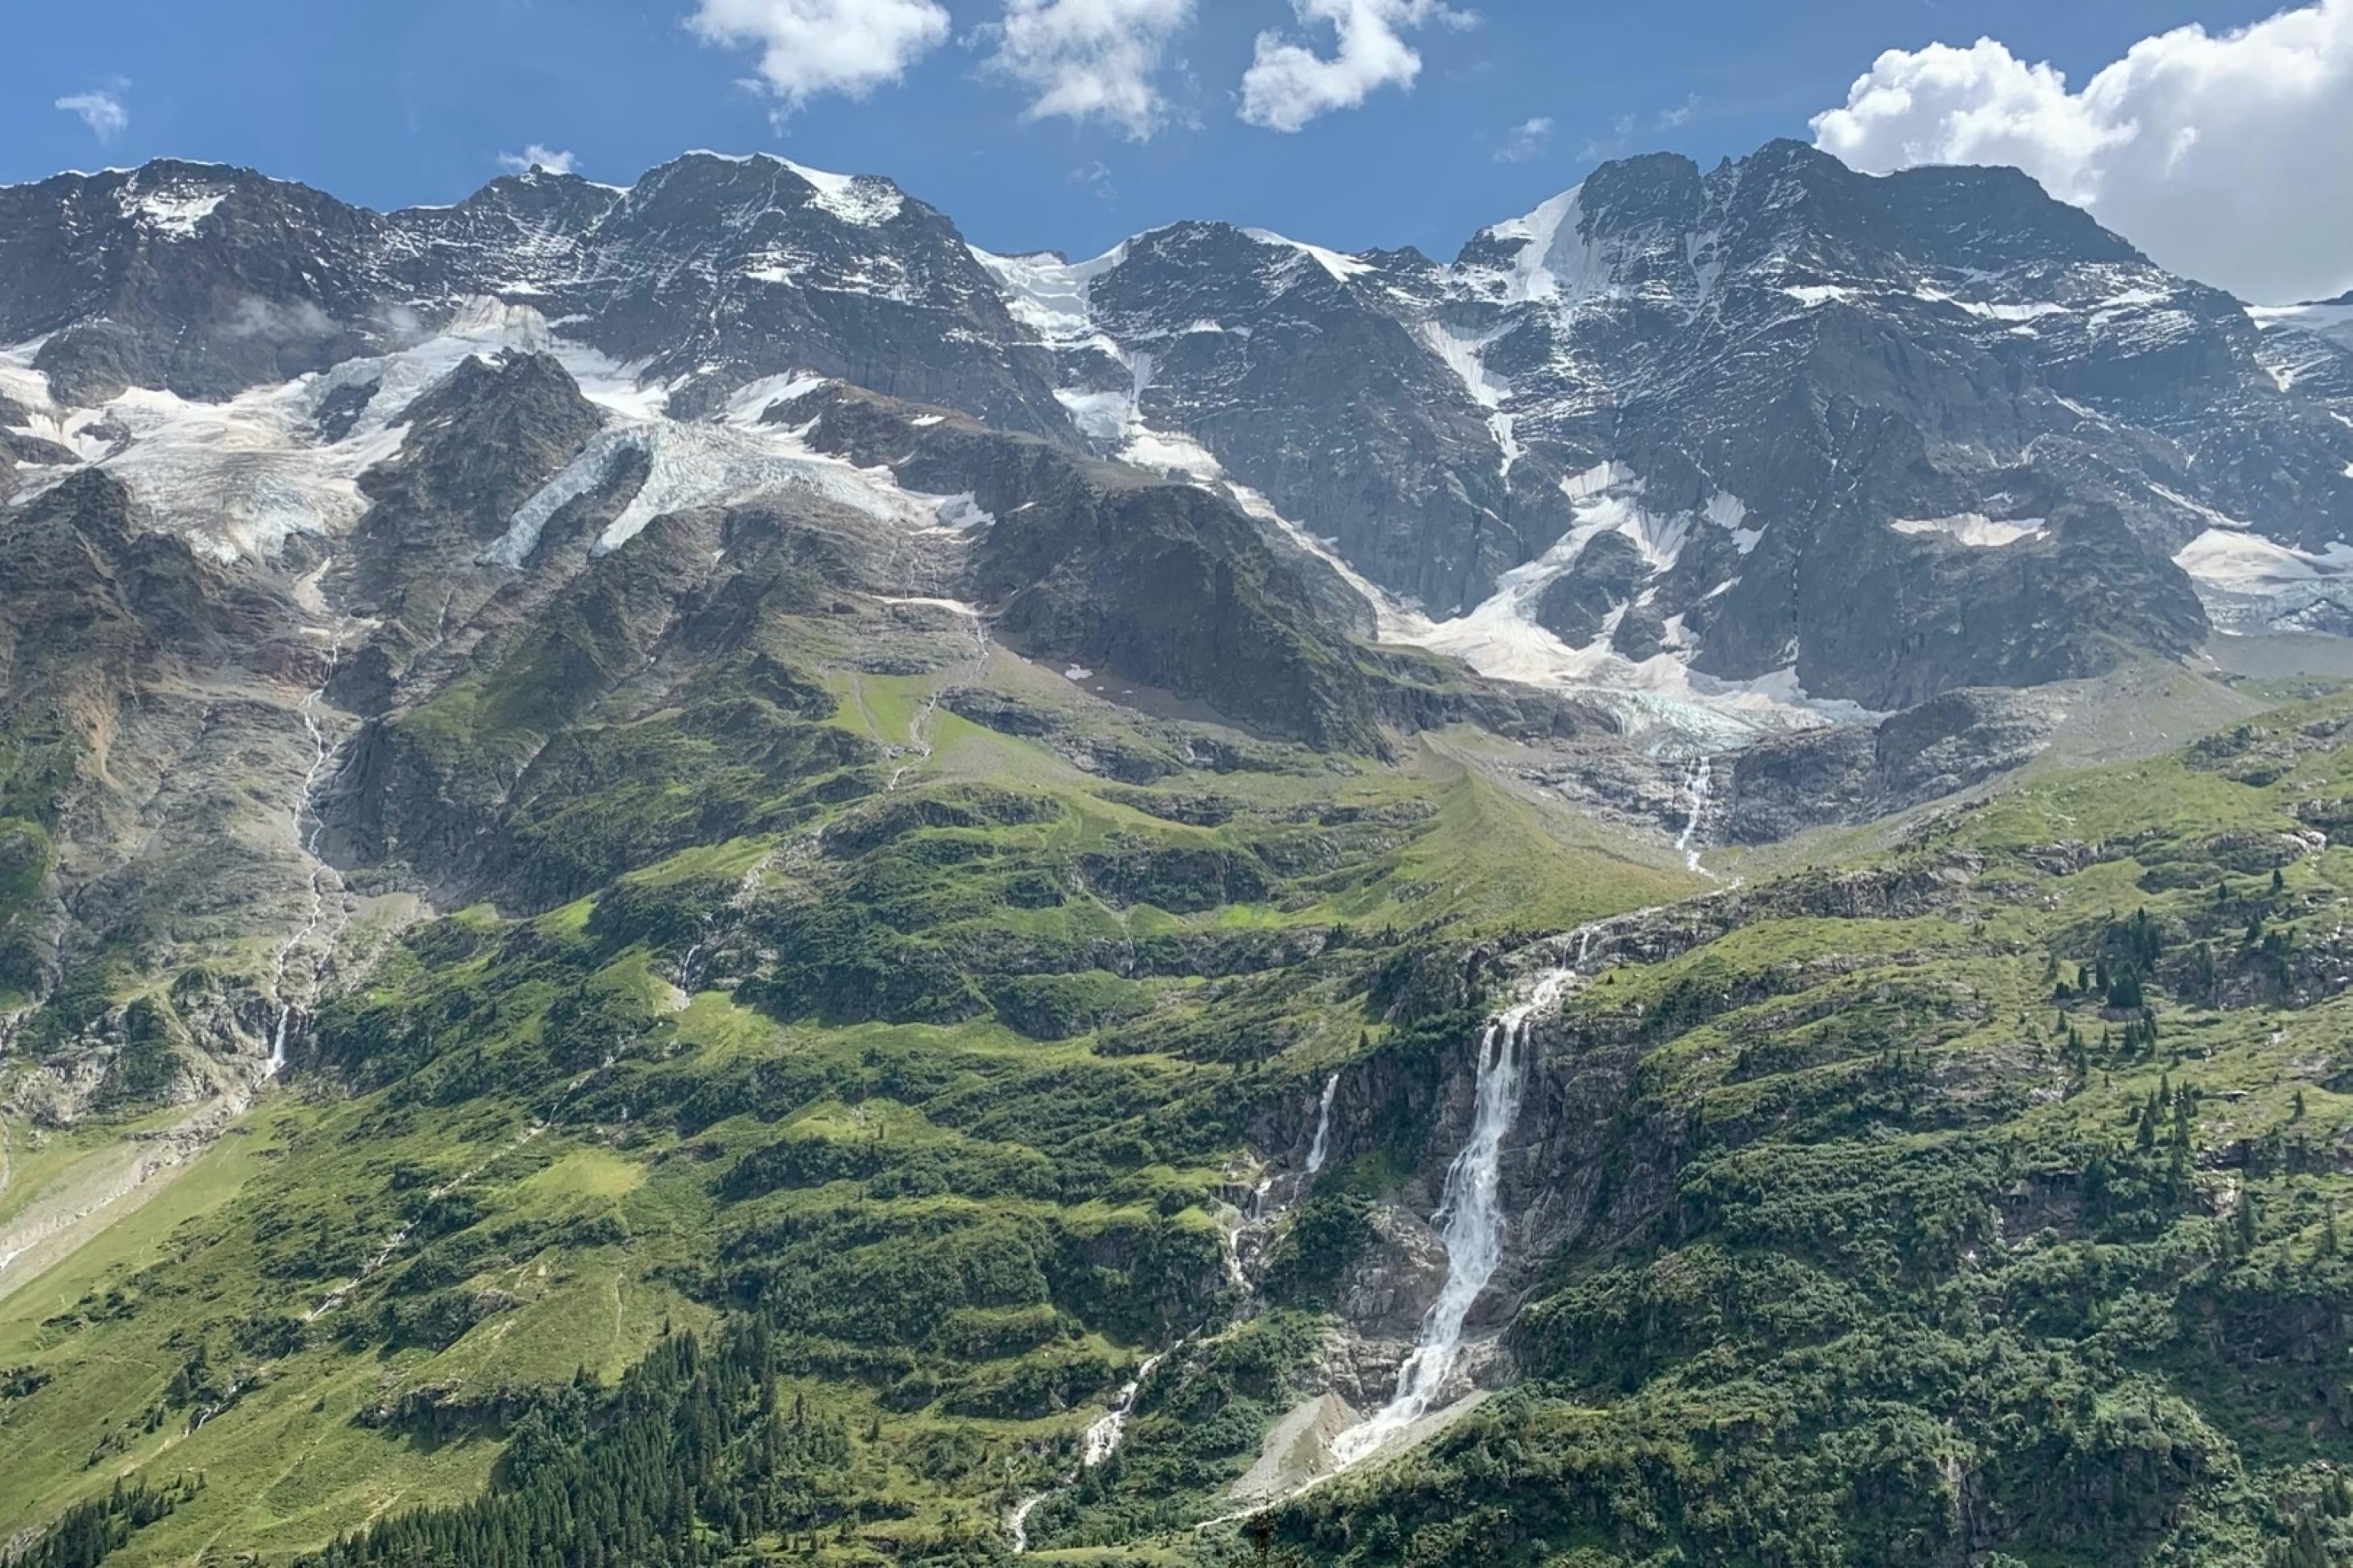 Schneebedeckte Berge ragen in den blauen Himmel. Die Vegetation verändert sich talabwärts von Gestein zu Wald- und Grünflächen. Mittig befindet sich ein Wasserfall.